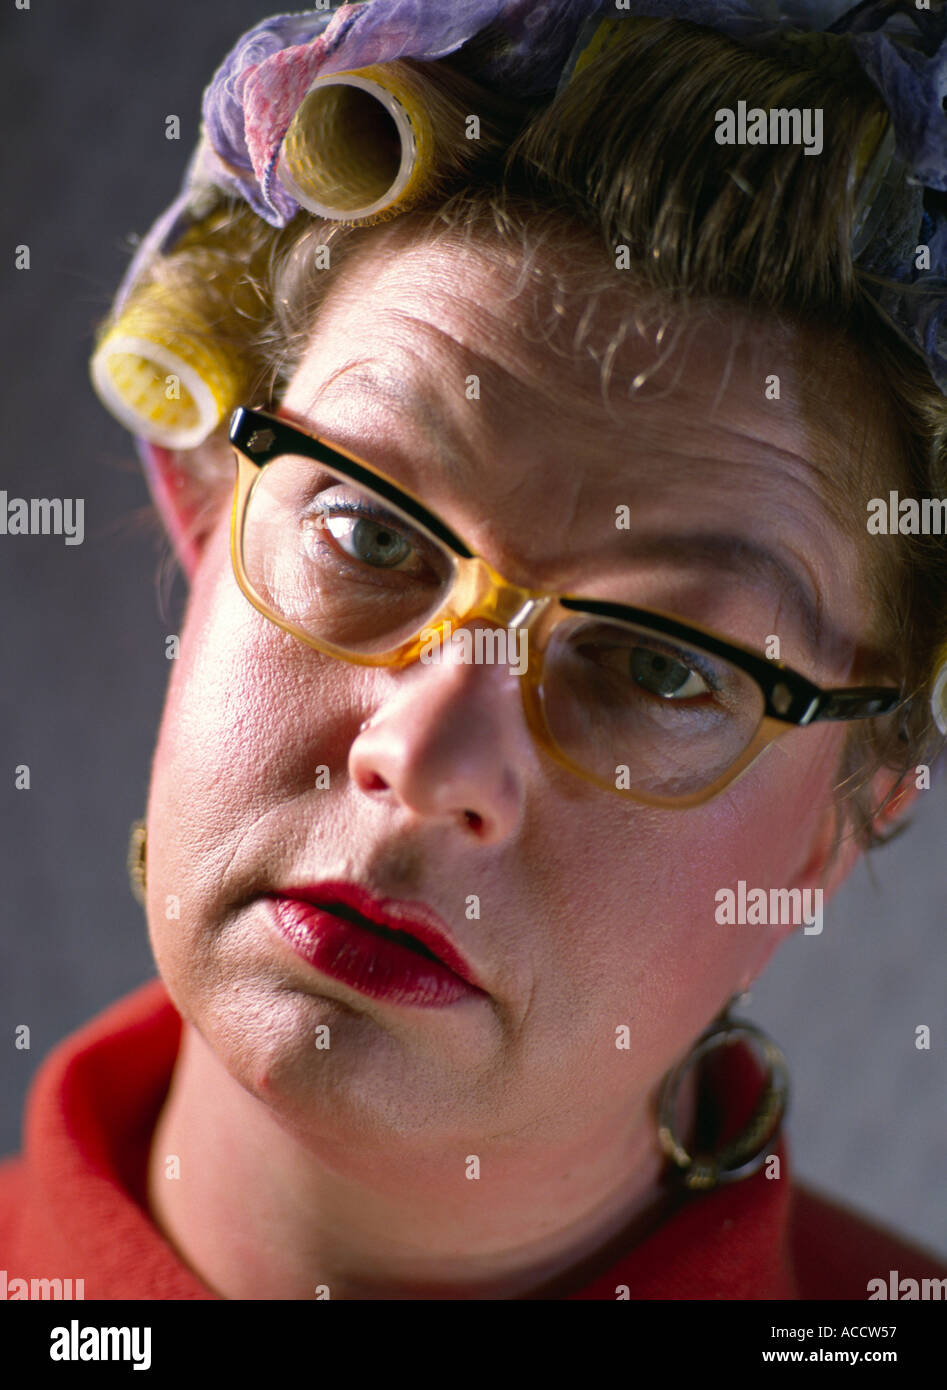 Herr Frau mit Lockenwickler und alte altmodische Brille Brillen suchen  hilflos blöd Stockfotografie - Alamy